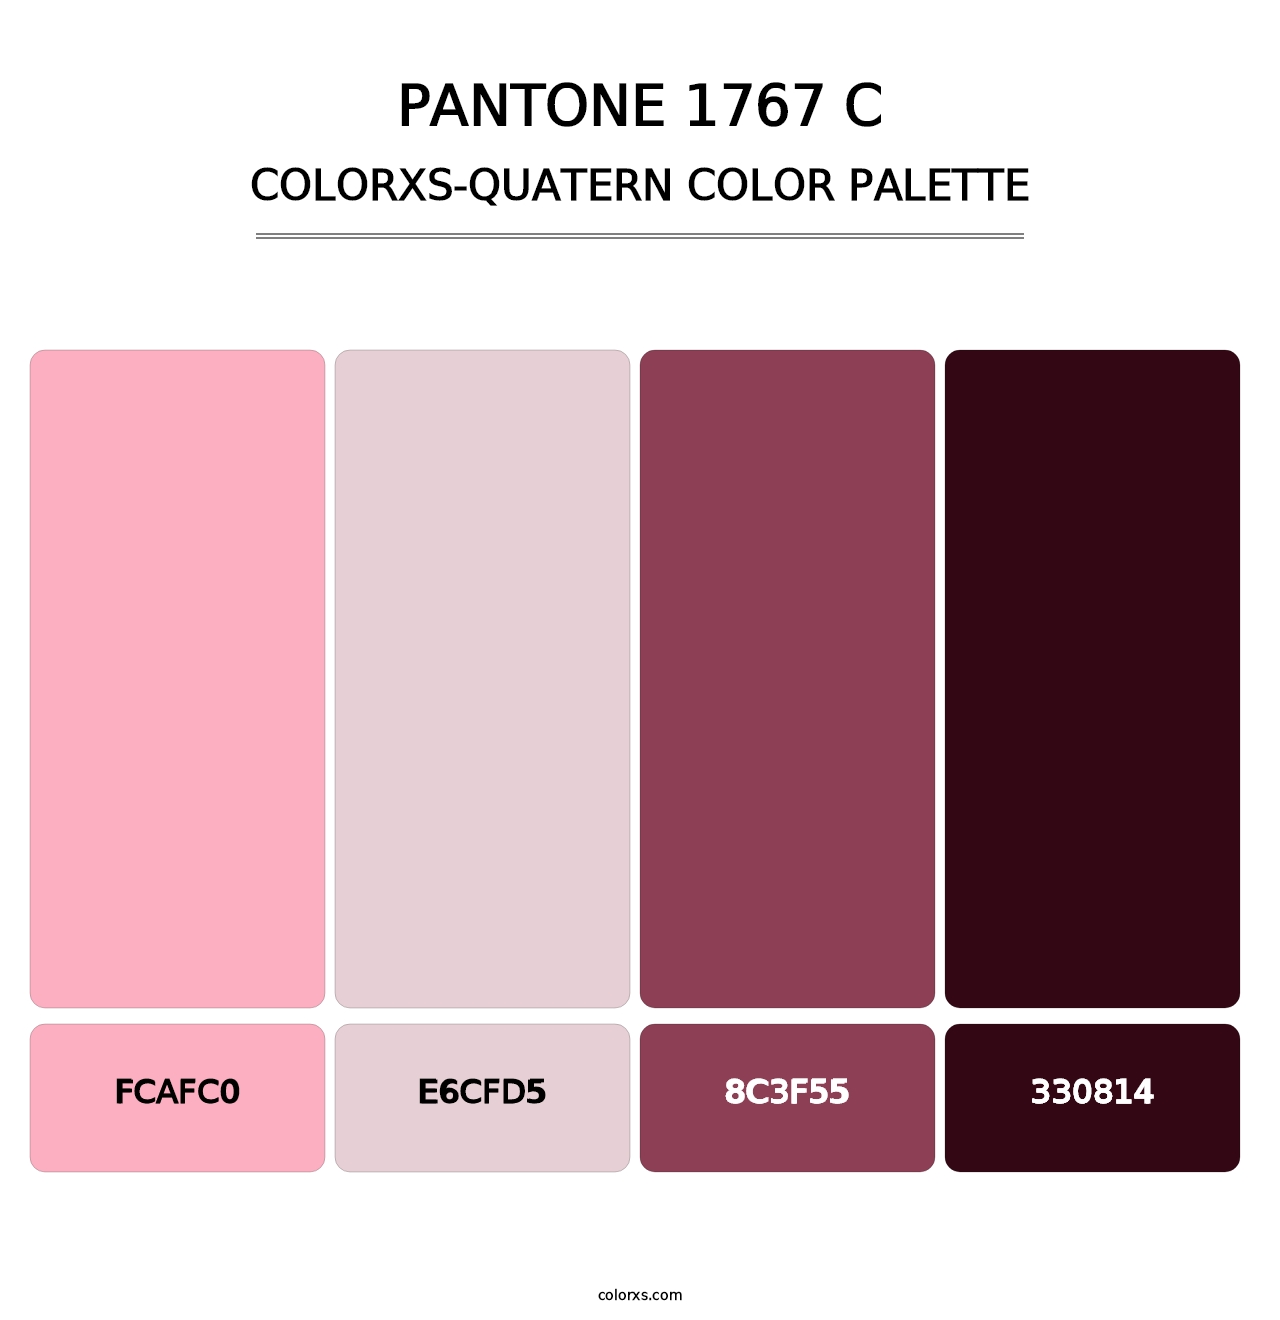 PANTONE 1767 C - Colorxs Quatern Palette